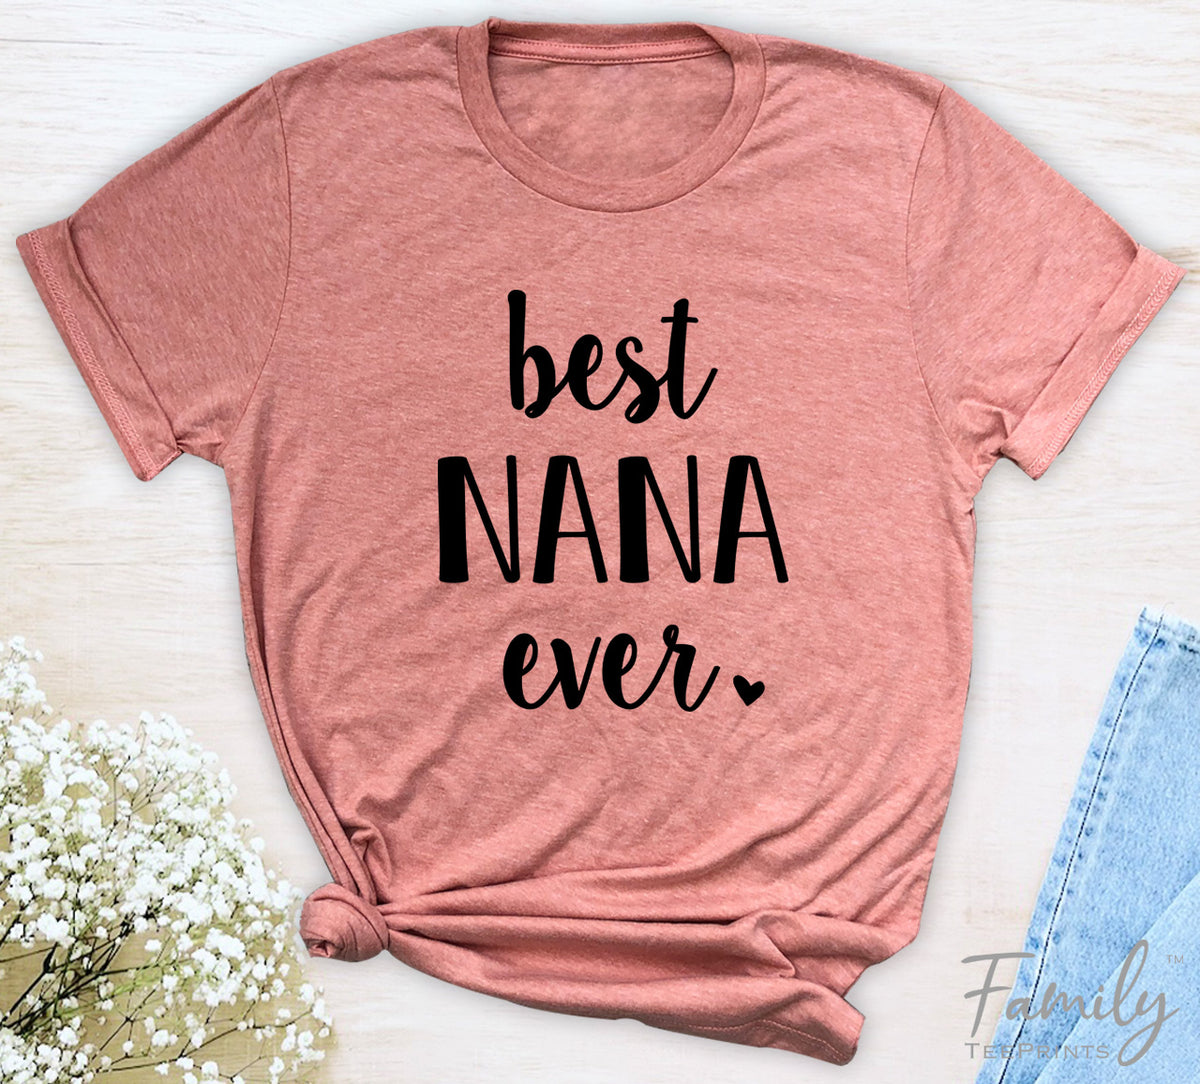 Best Nana Ever - Unisex T-shirt - Nana Shirt - Gift For New Nana - familyteeprints